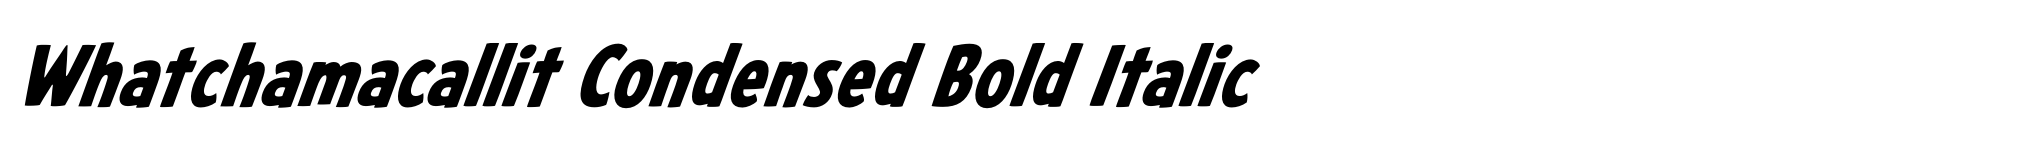 Whatchamacallit Condensed Bold Italic image